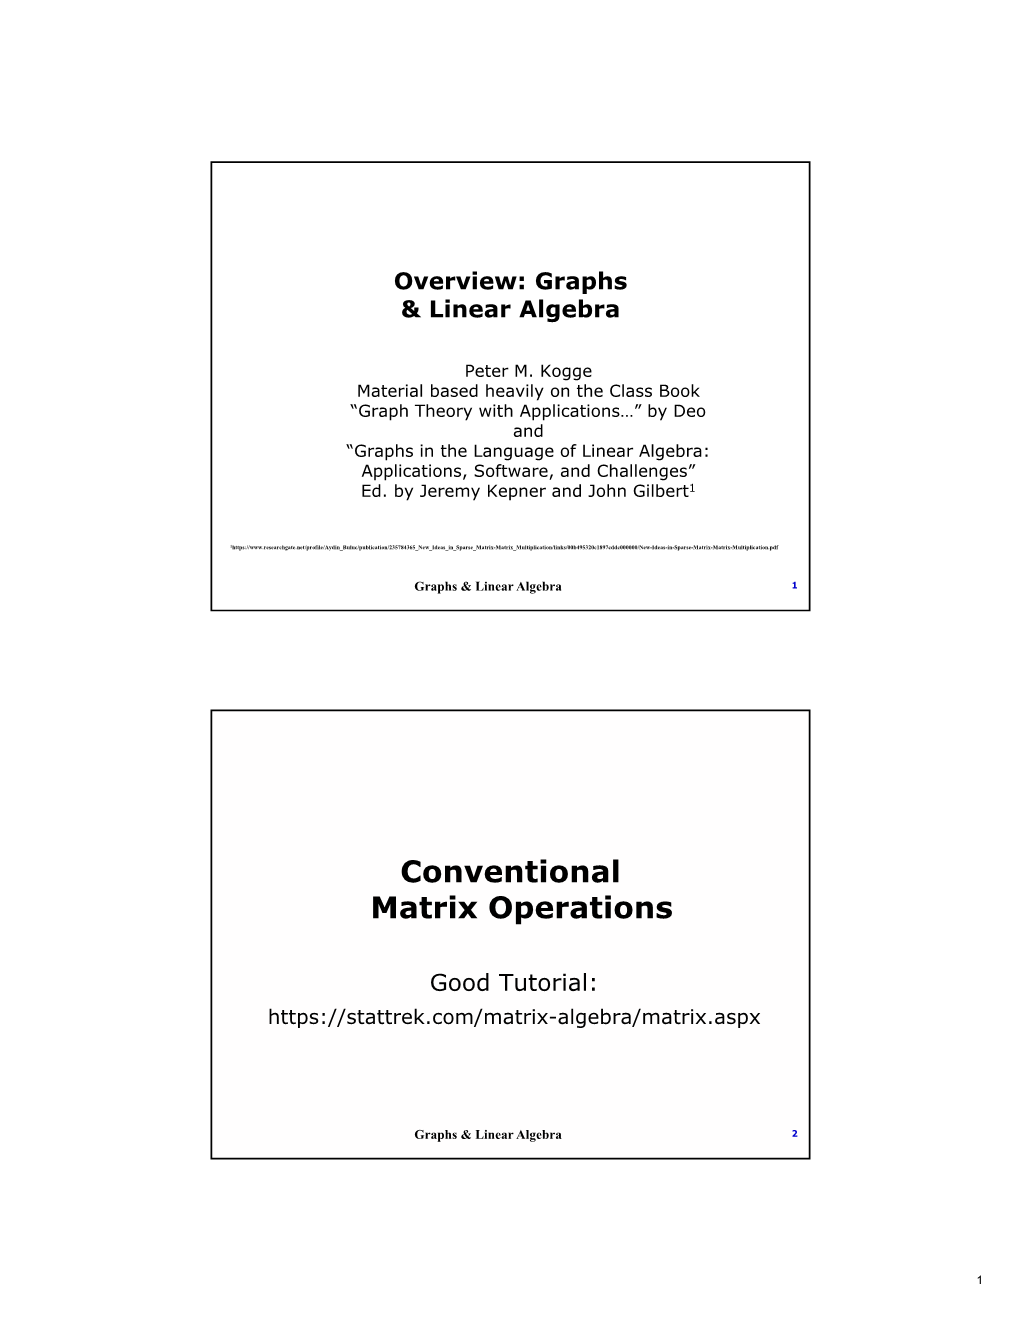 Conventional Matrix Operations